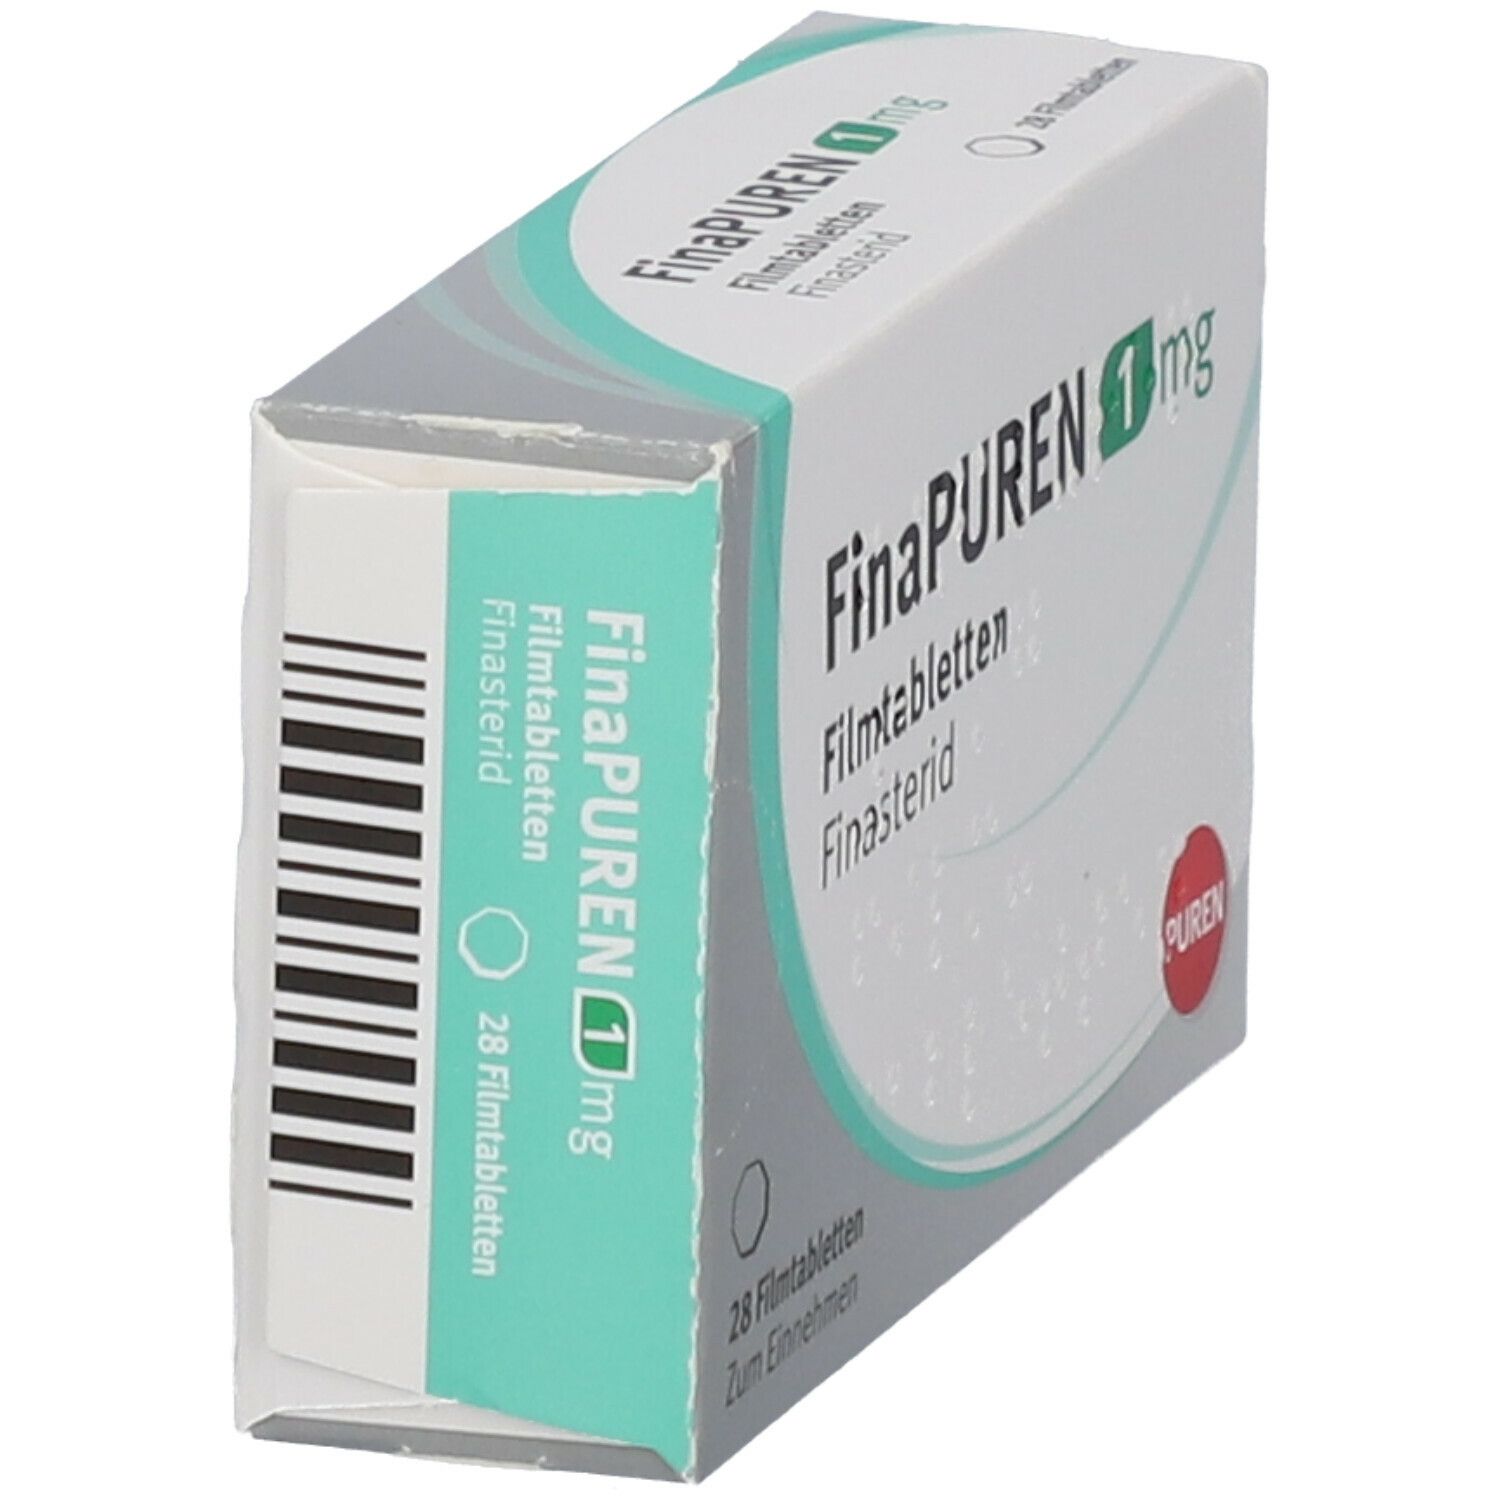 FinaPUREN 1 mg